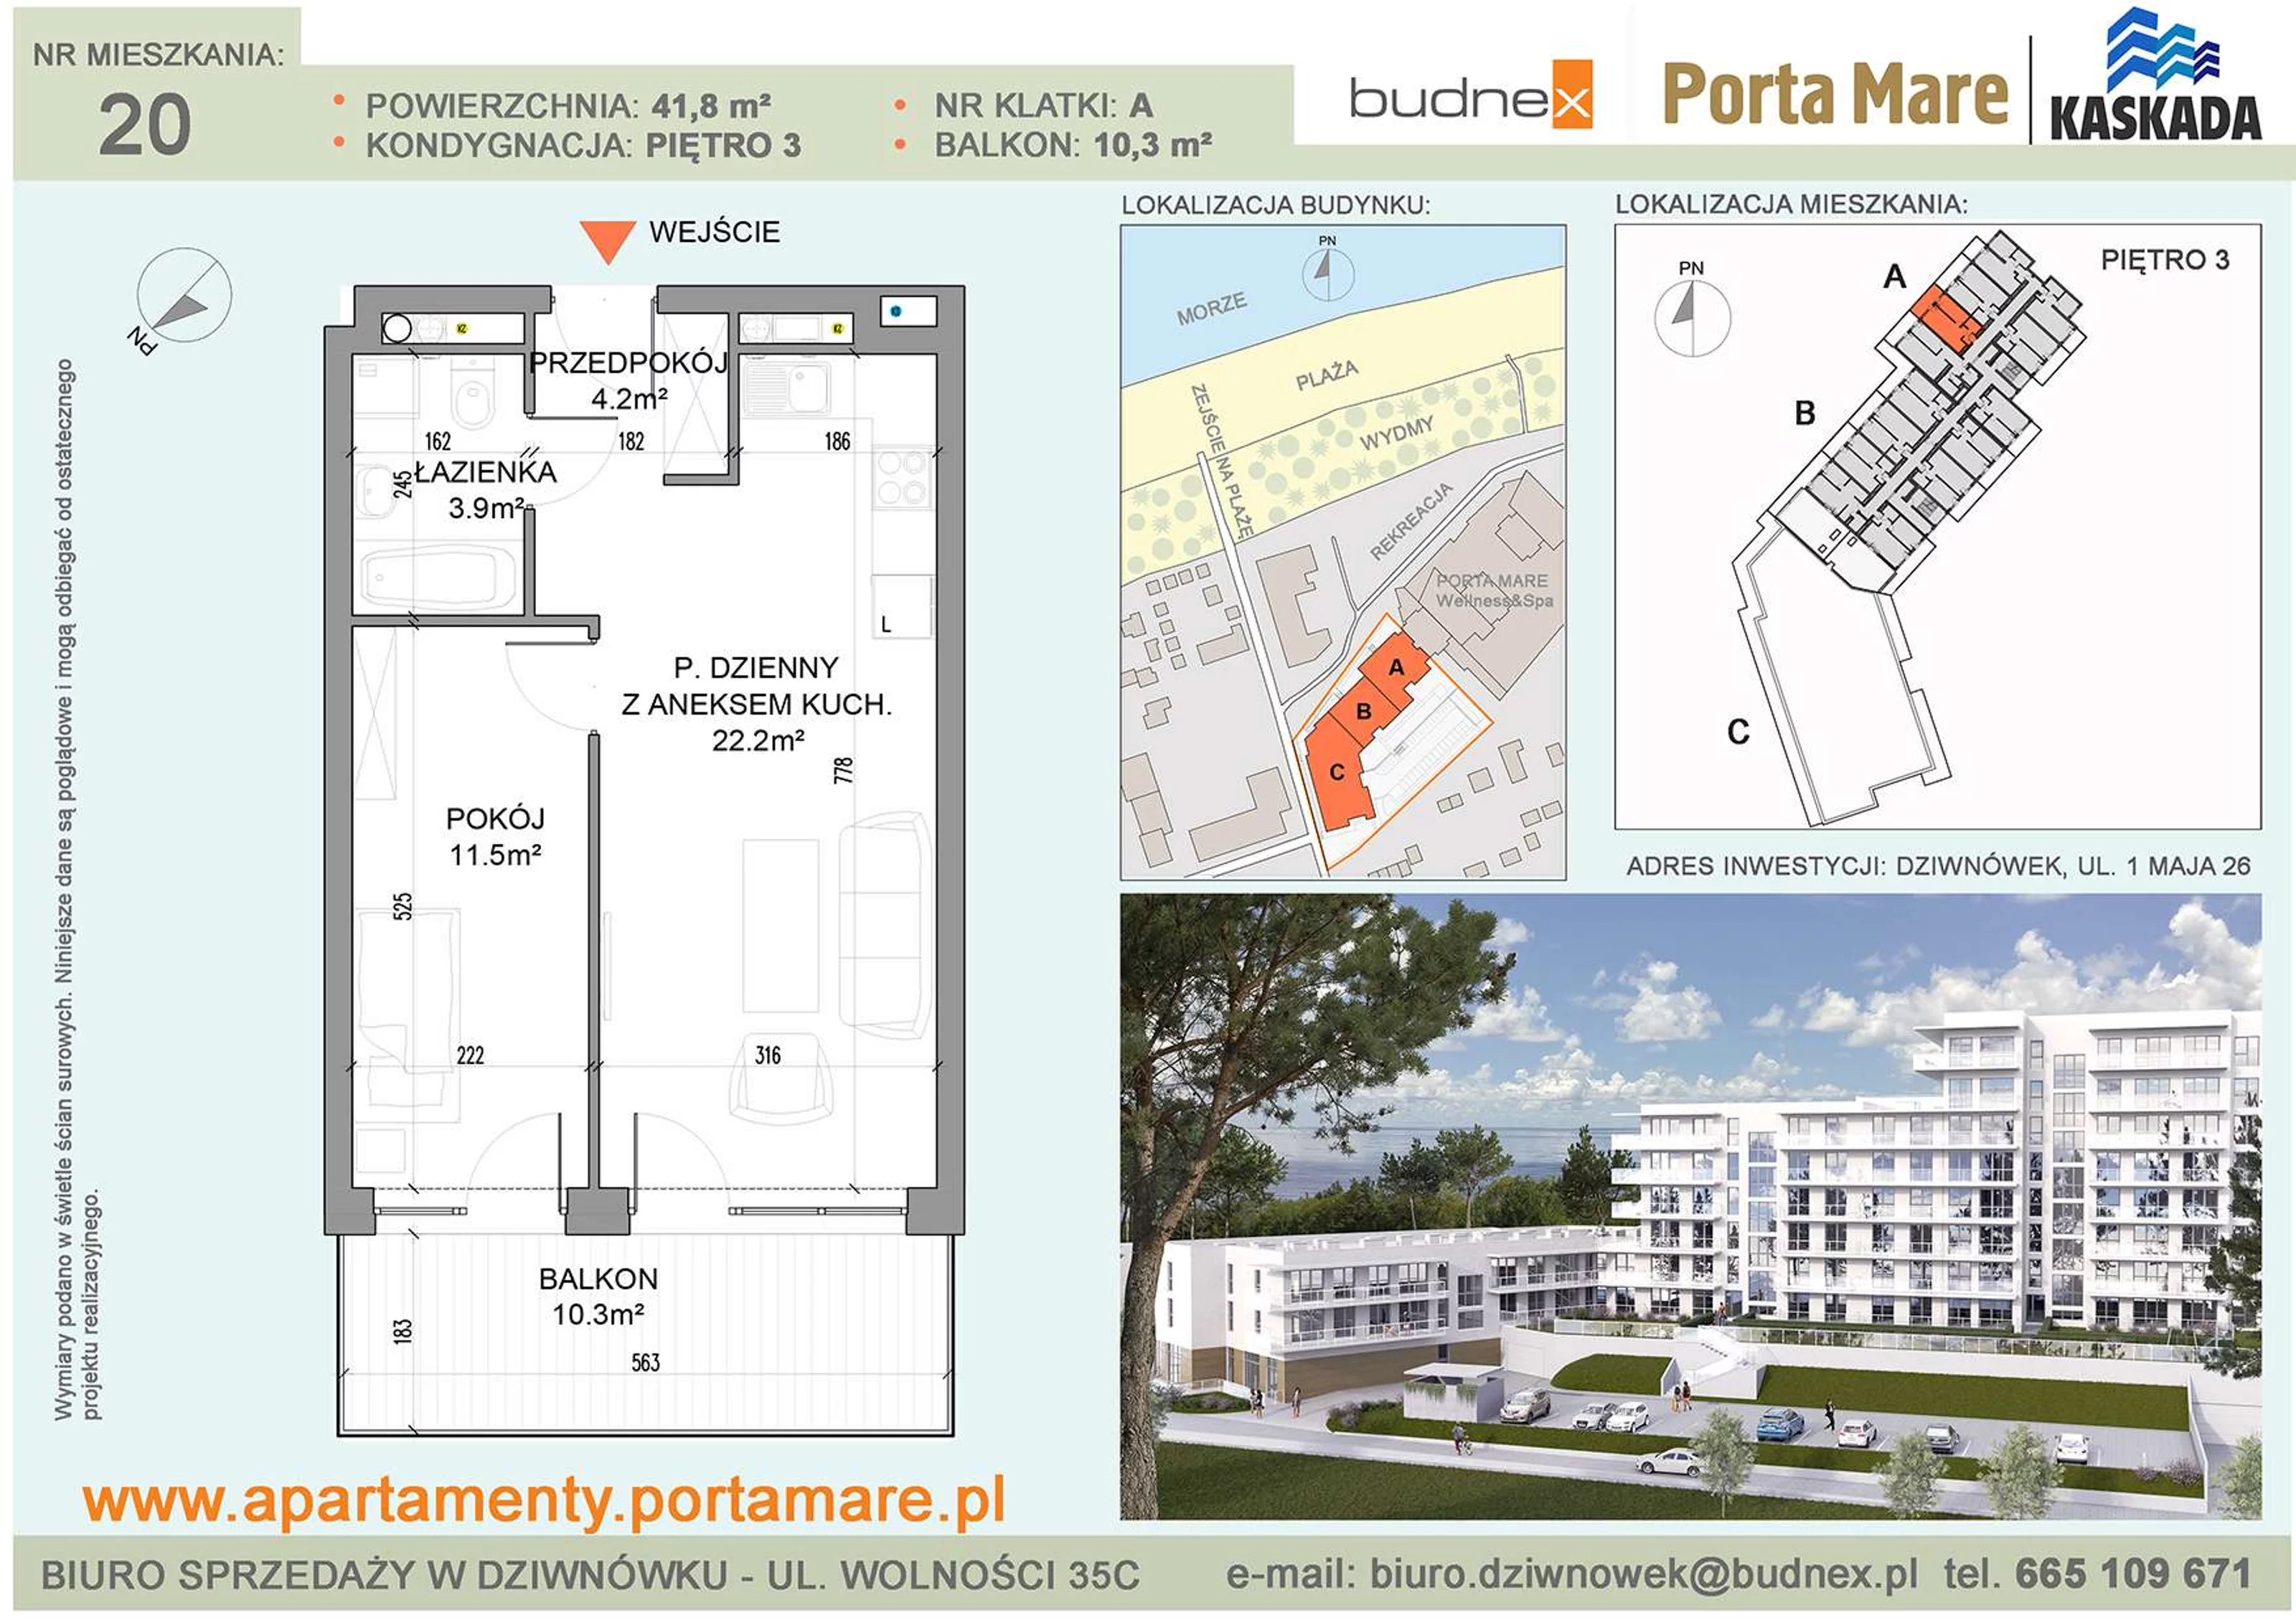 Mieszkanie 41,80 m², piętro 3, oferta nr A/M20, Porta Mare Kaskada, Dziwnówek, ul. 1 Maja 26